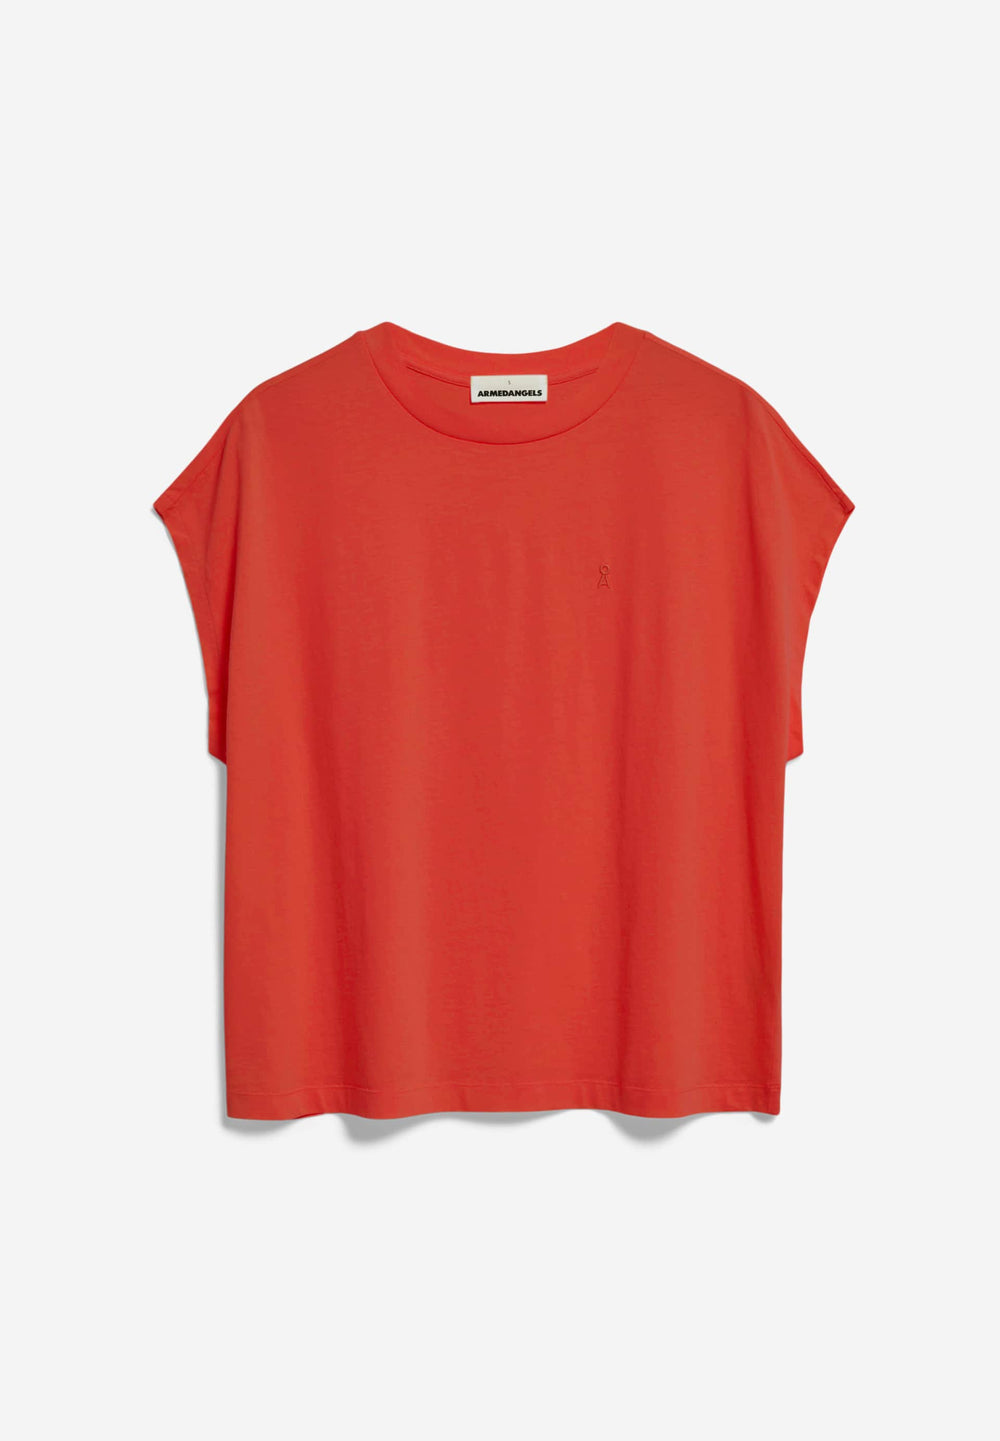 INAARA Poppy Red Oversized T-Shirt